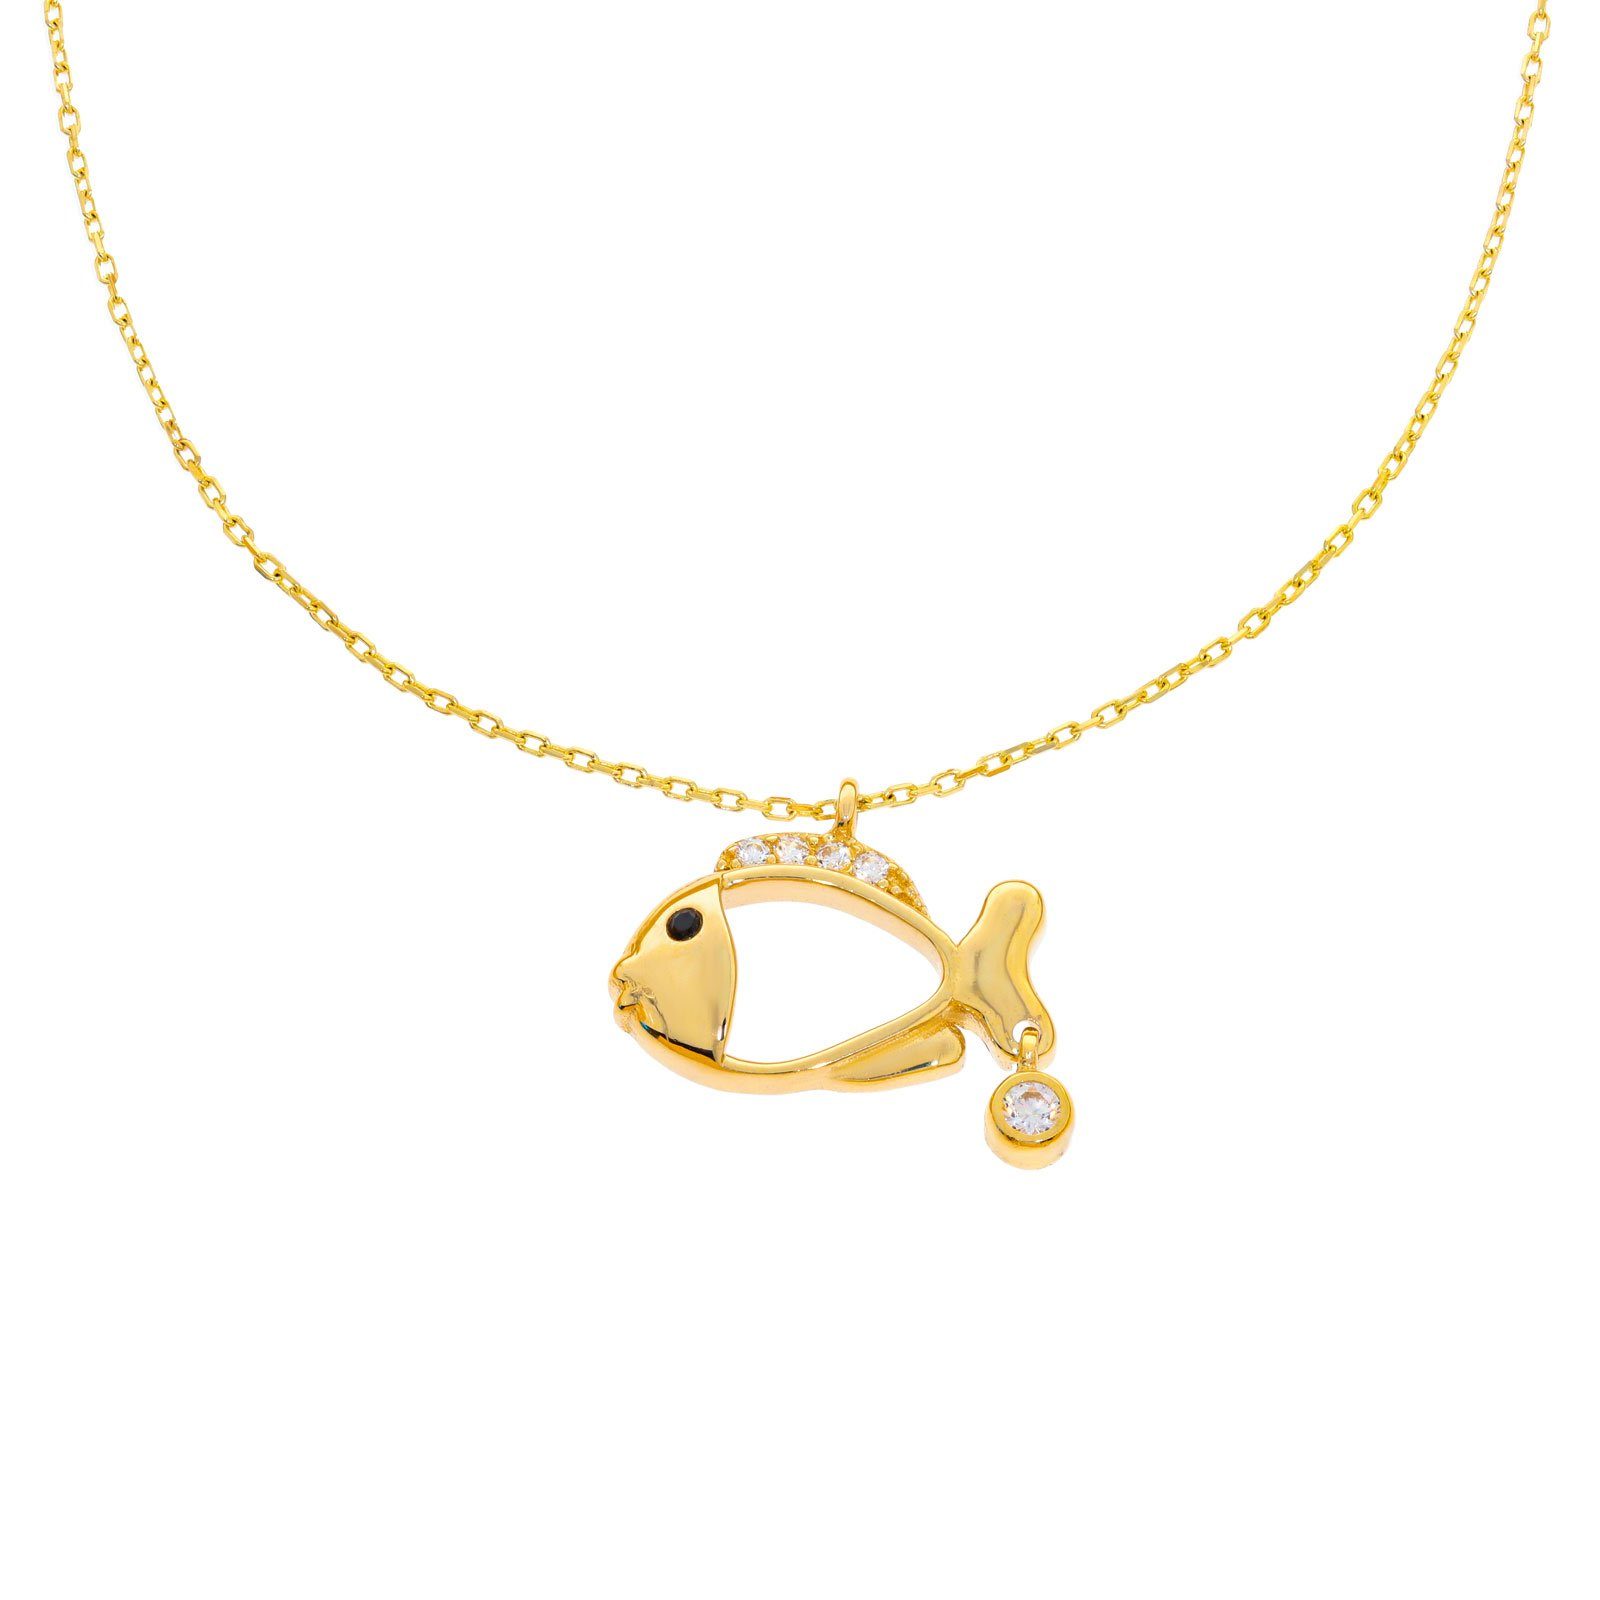 Stella-Jewellery Collier 585er Gold Kette mit Fisch Anhänger (inkl. Etui),  Collierkette mit Zirkonia motiv Tier